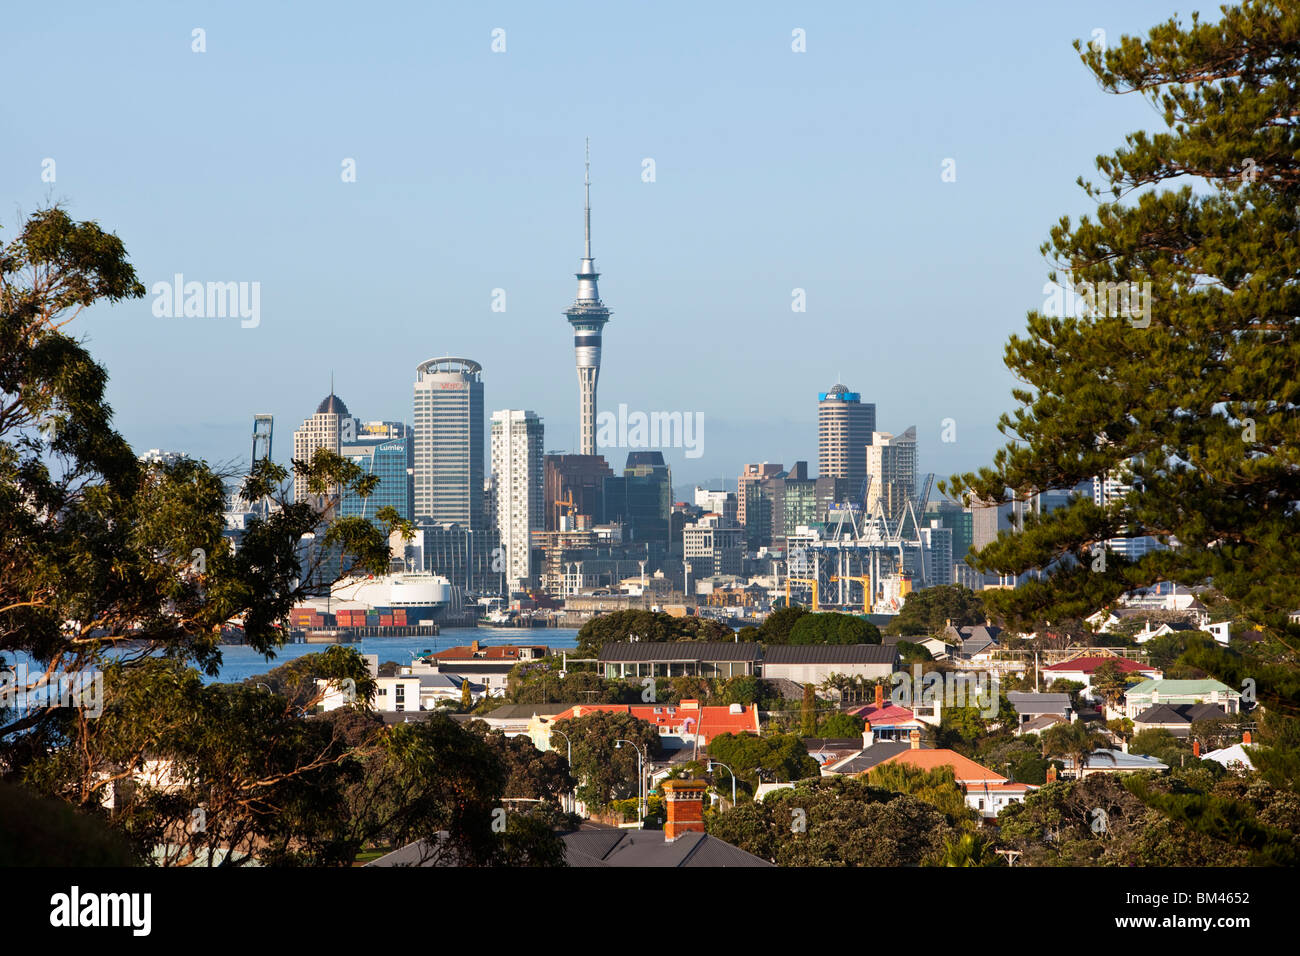 Vue sur la ville de Devonport Auckland skyline. Devonport, Auckland, île du Nord, Nouvelle-Zélande Banque D'Images